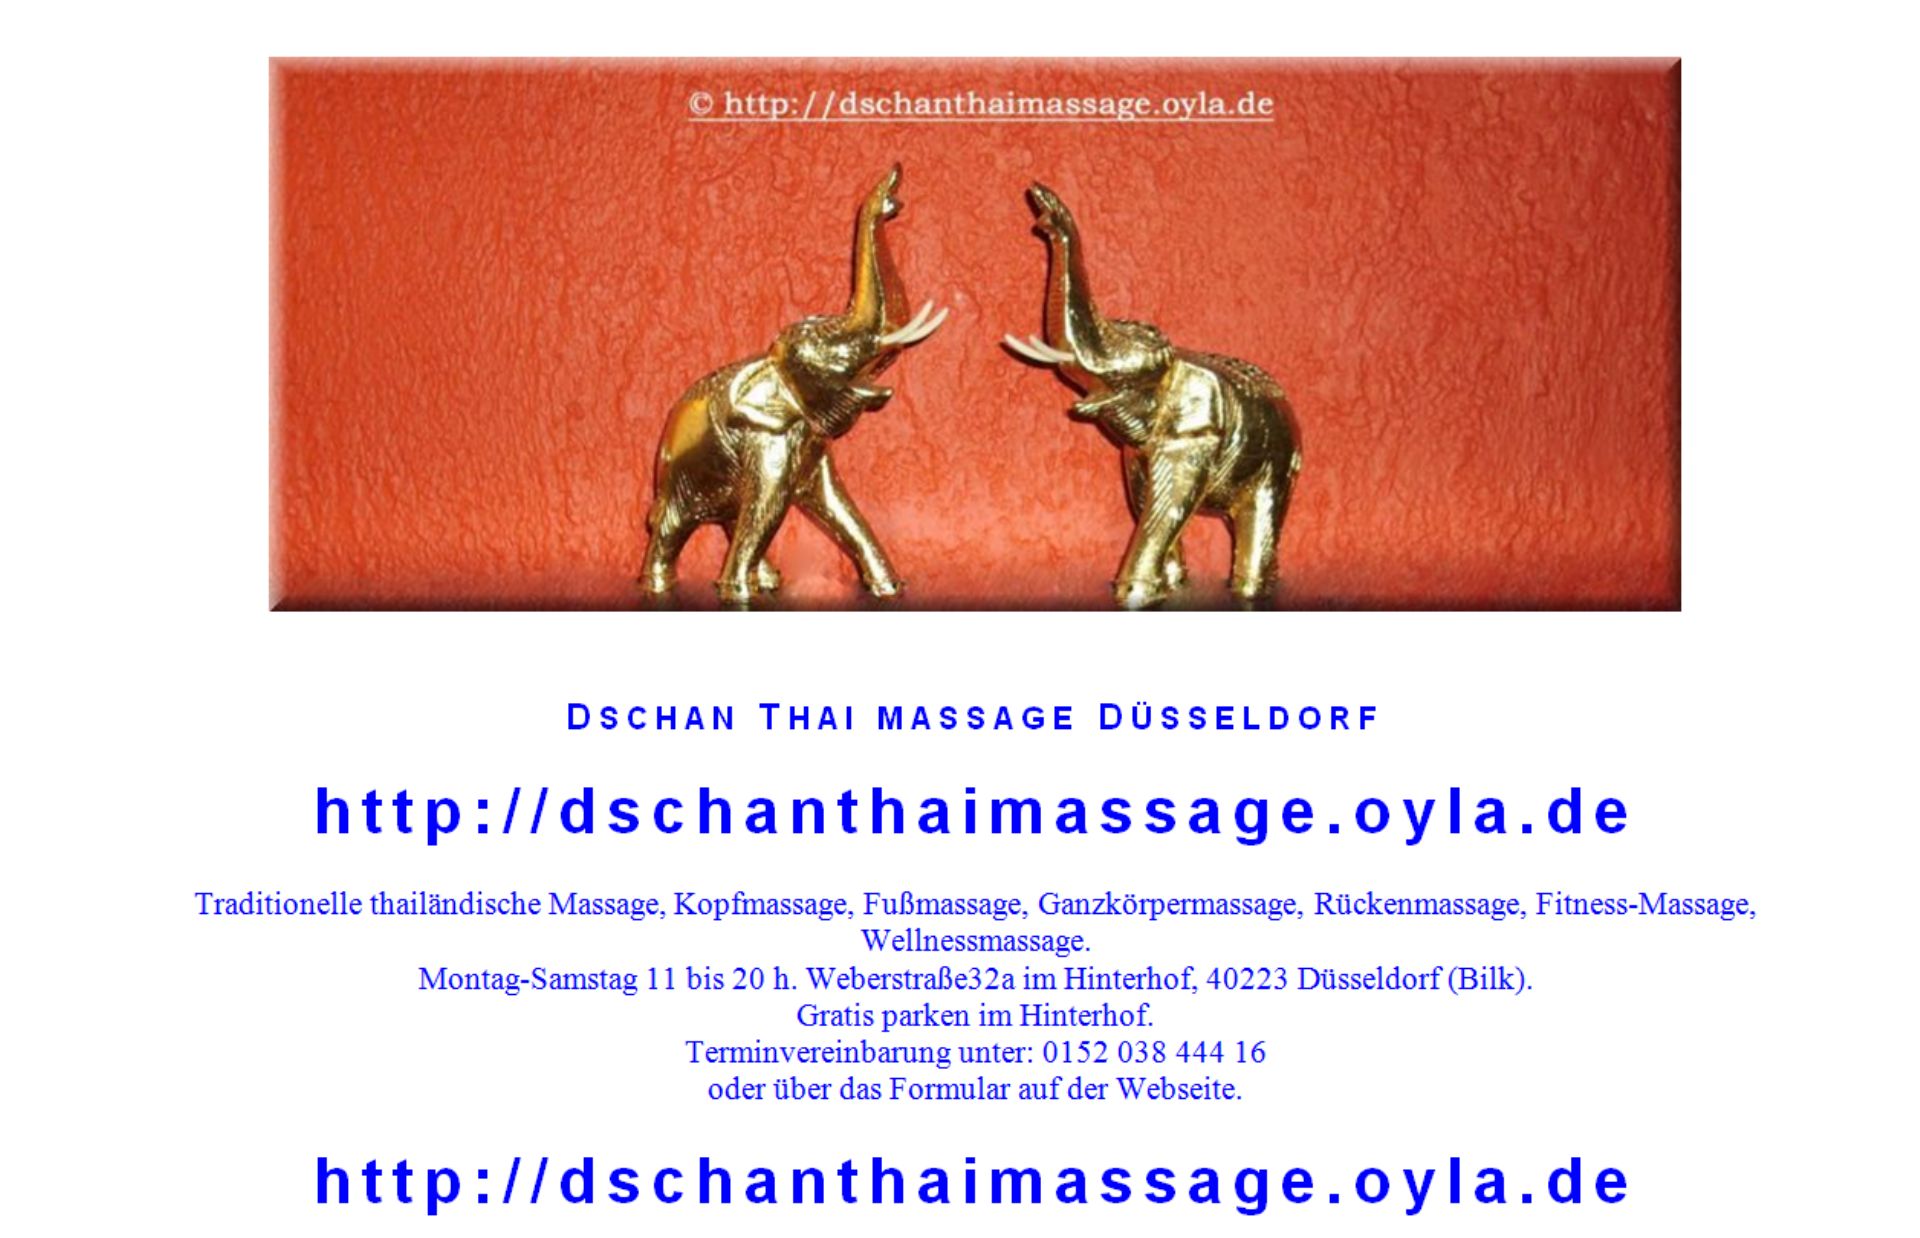 http://dschanthaimassage.oyla.de